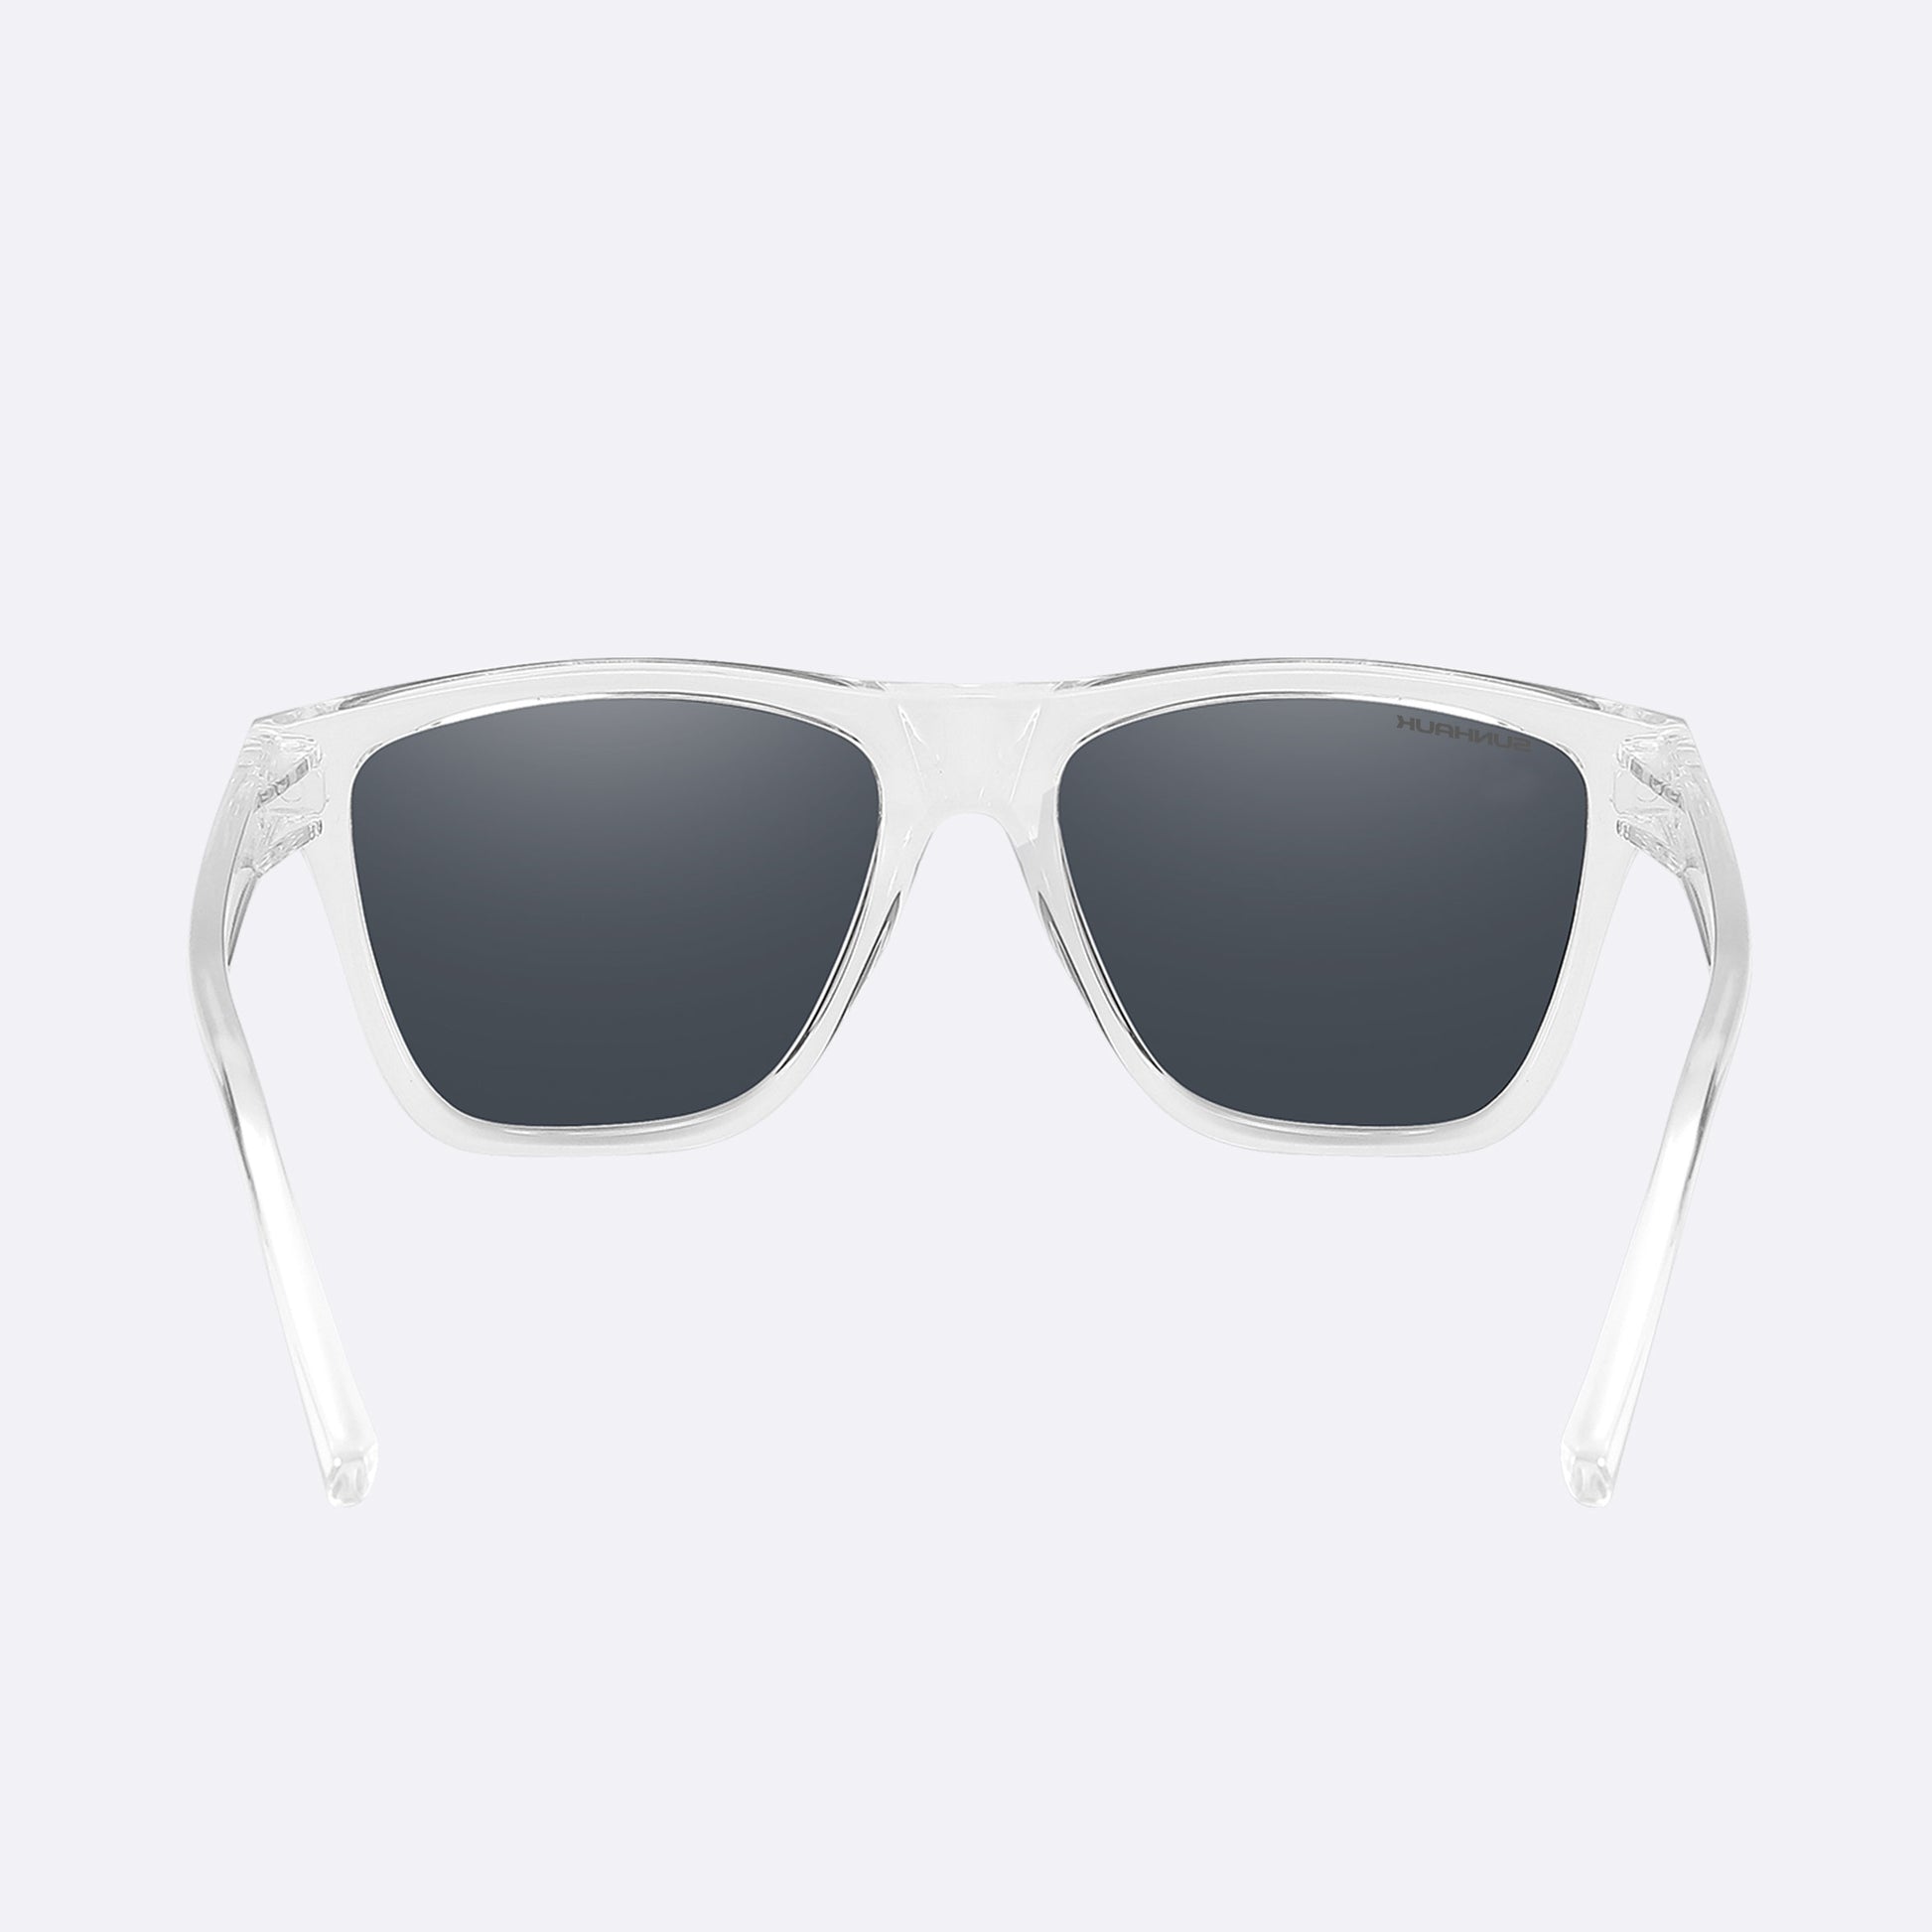 Liquid Black - Transparent Frame Sunglasses | SUNHAUK